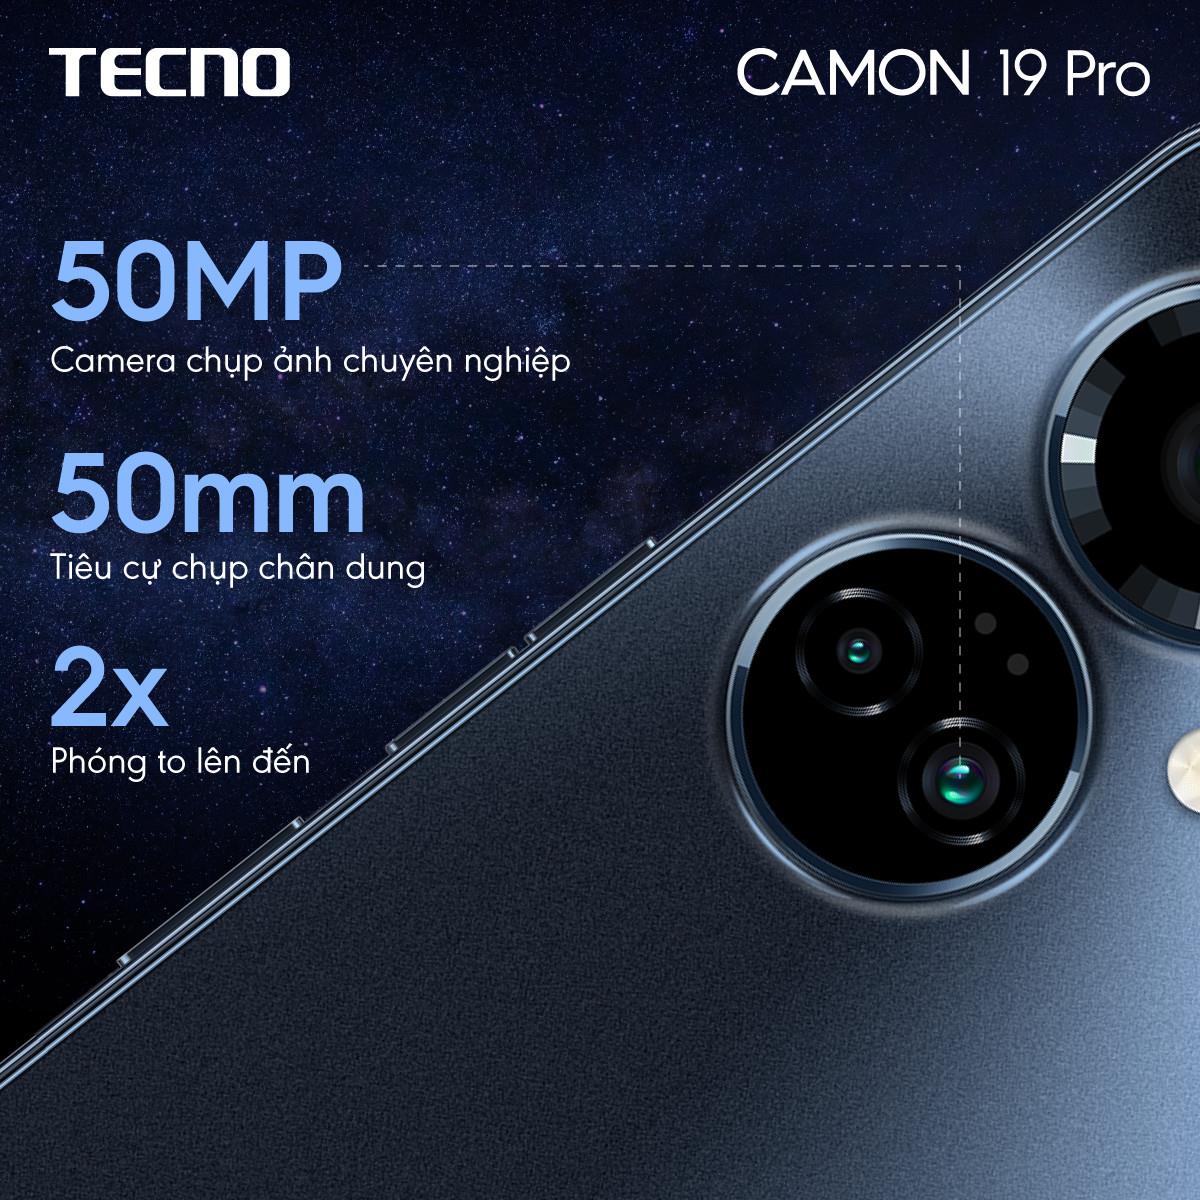 CAMON 19 Pro - chiếc camera phone tầm trung được TECNO tiên phong ra mắt tại Việt Nam có gì đặc biệt? - Ảnh 2.